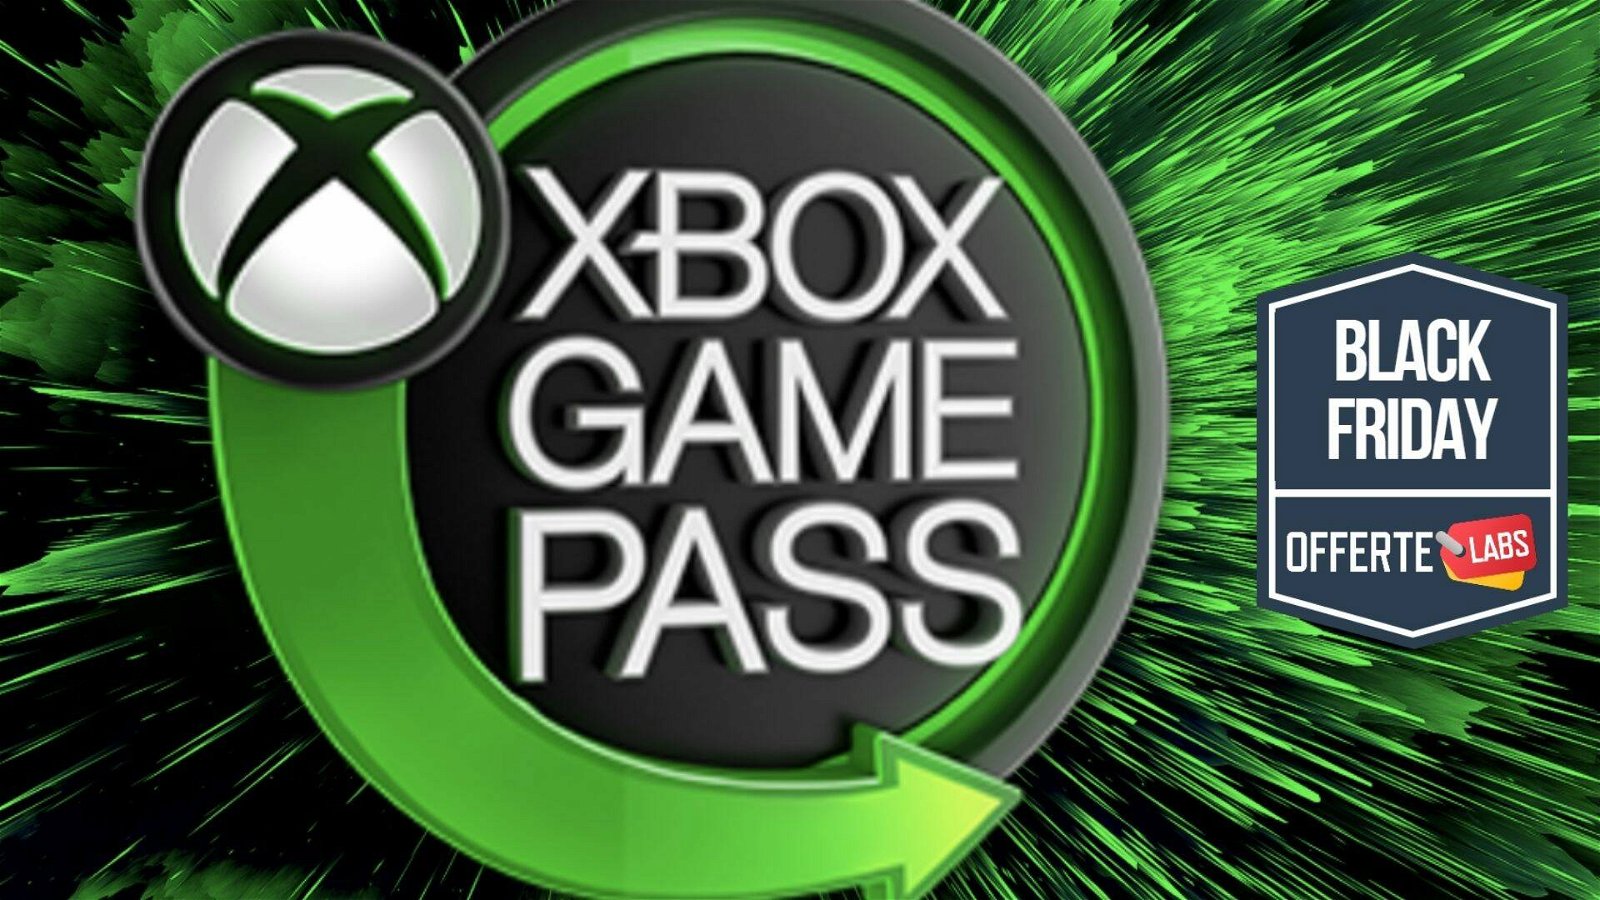 Immagine di Xbox Game Pass per PC: che prezzo! 3 mesi a meno di 20€!